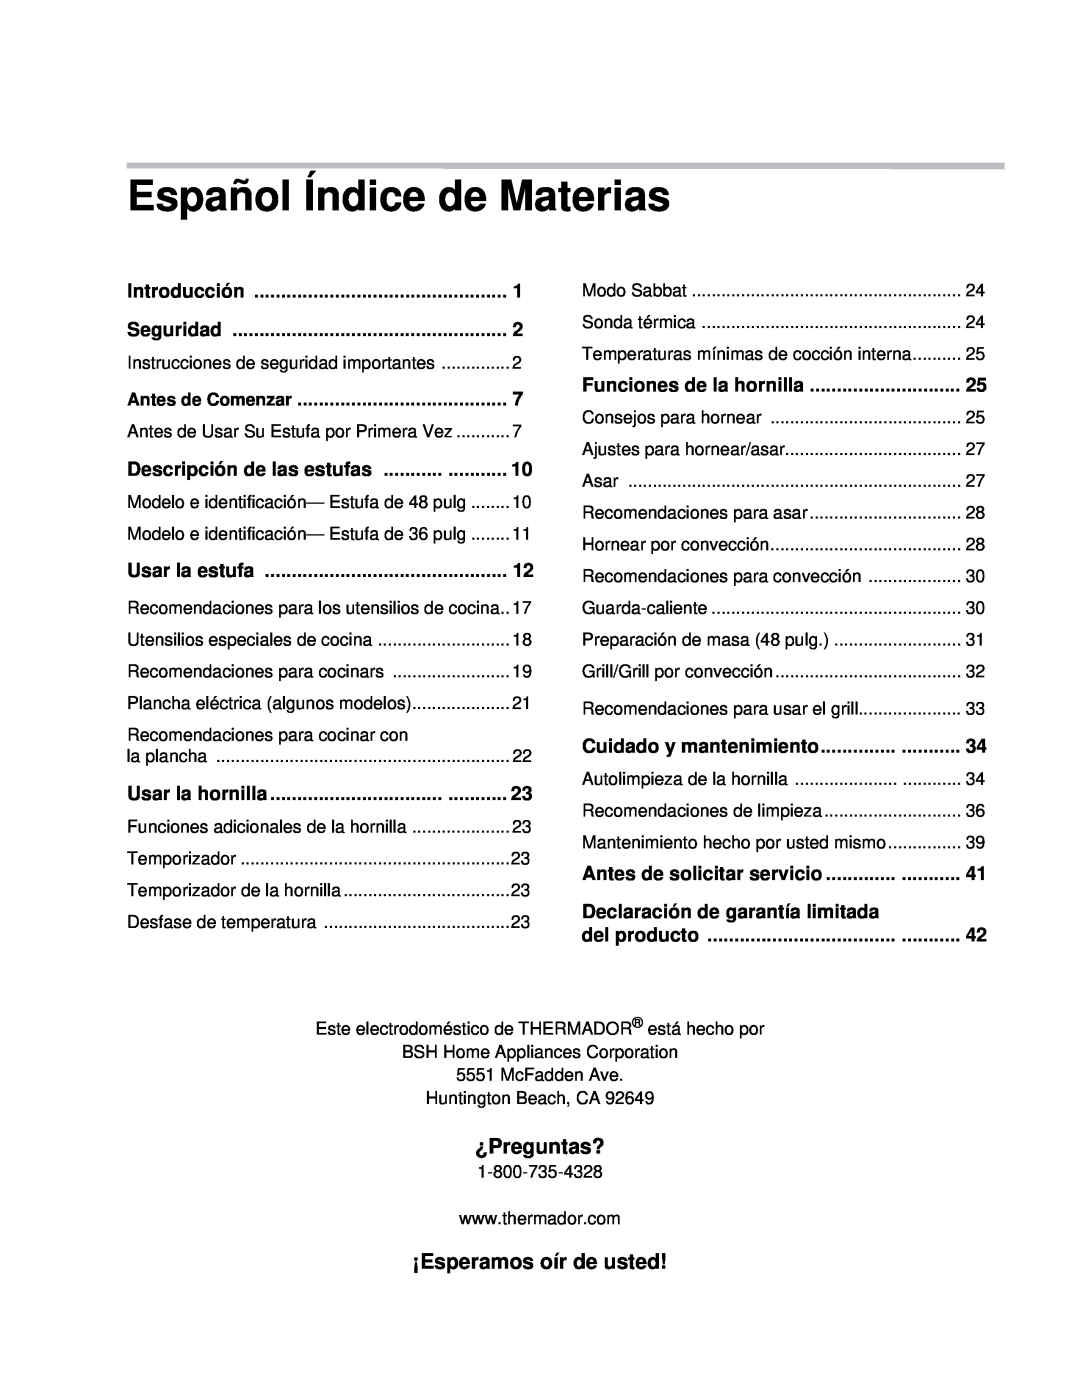 Thermador PRD48, PRD36 manual Español Índice de Materias, ¿Preguntas?, ¡Esperamos oír de usted 